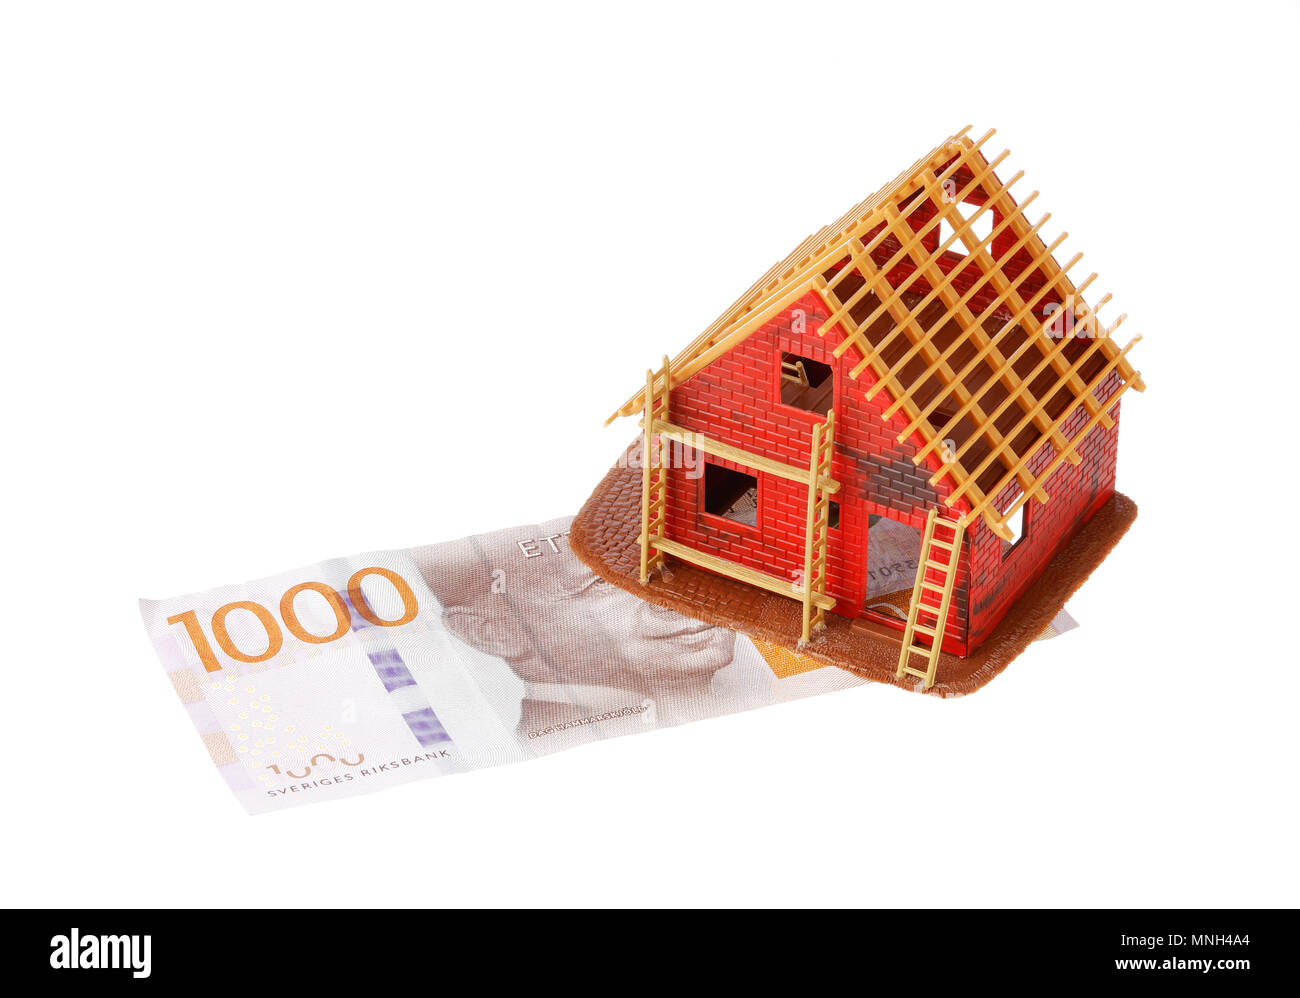 Stockholm, Schweden - 25 November 2017: Das Haus ist im Bau auf der Basis von Wert illustriert von Enb svenk Banknote tausend Kronen gebaut Stockfoto